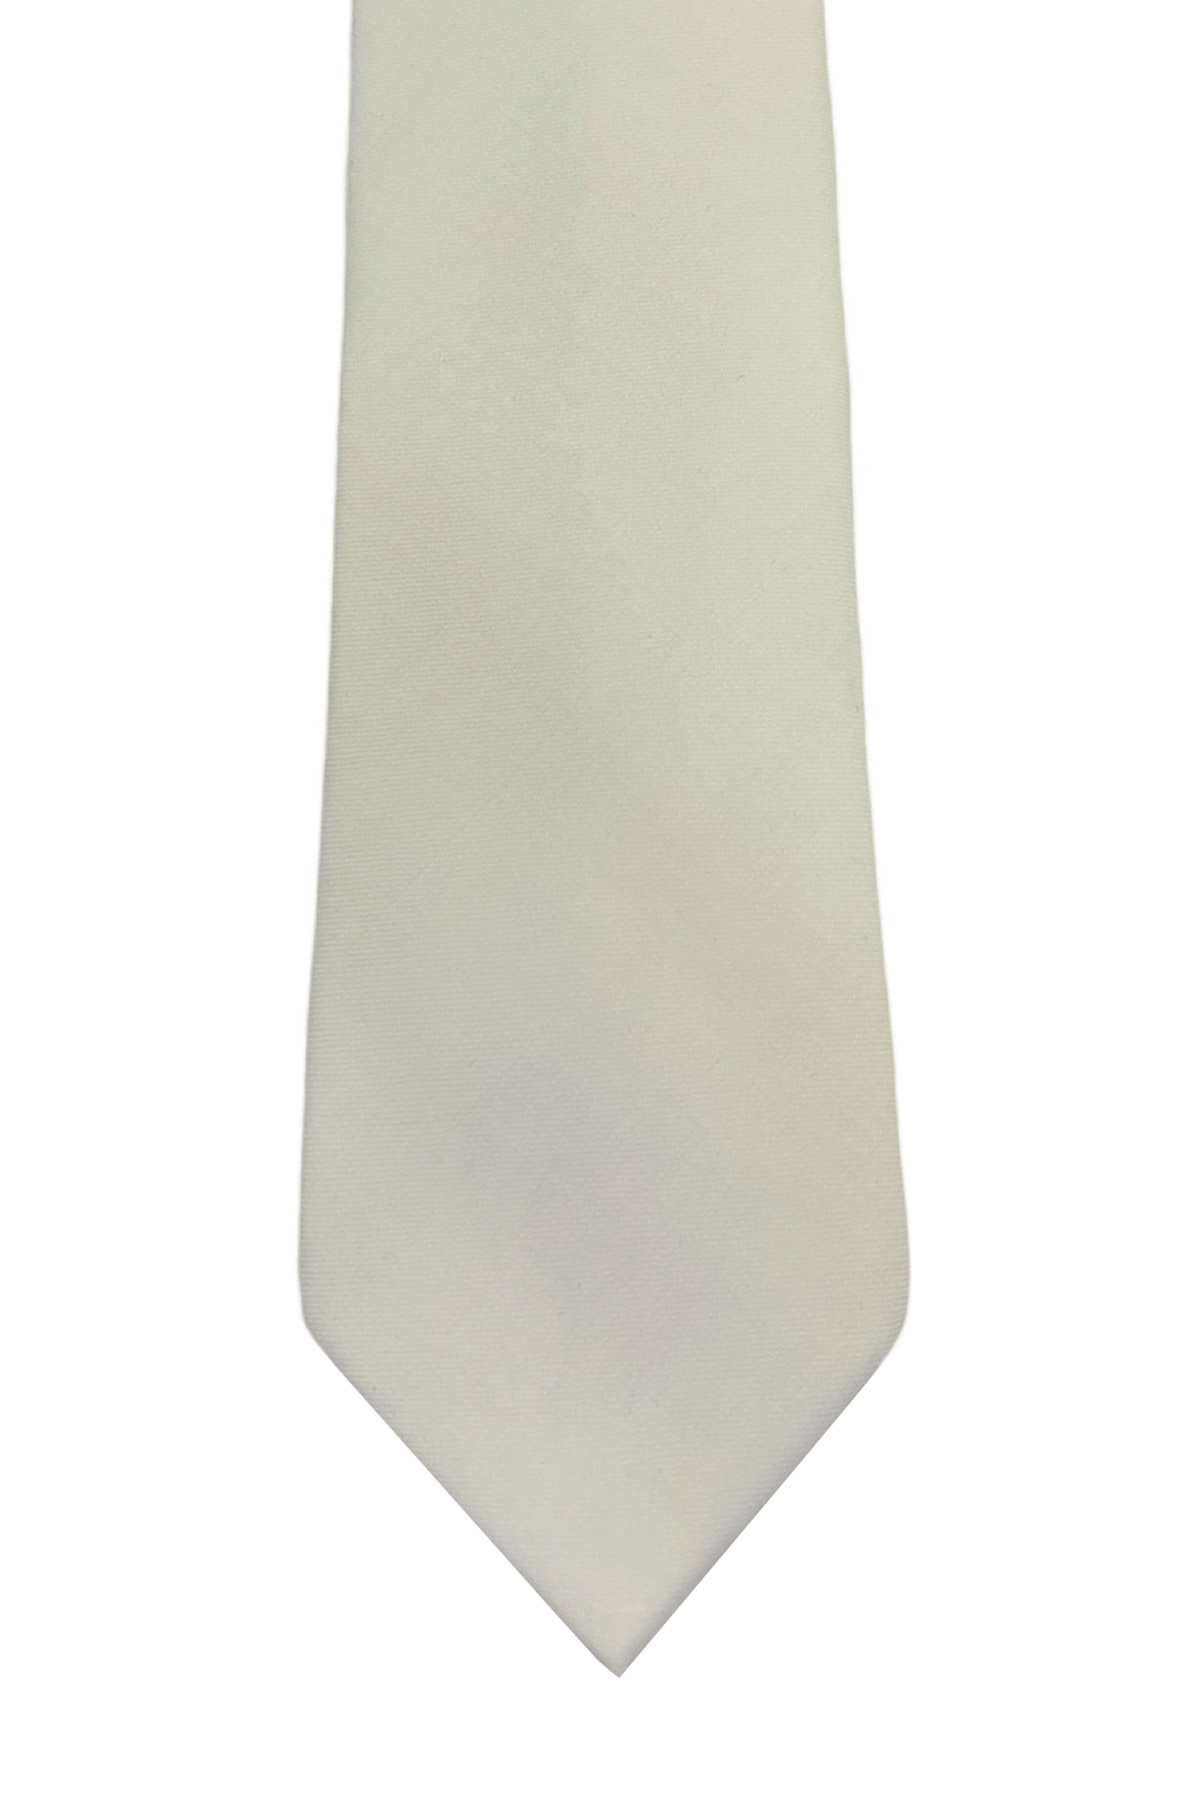 Cravatta uomo bianca tinta unita 8cm da cerimonia elegante fresco lana super 120's